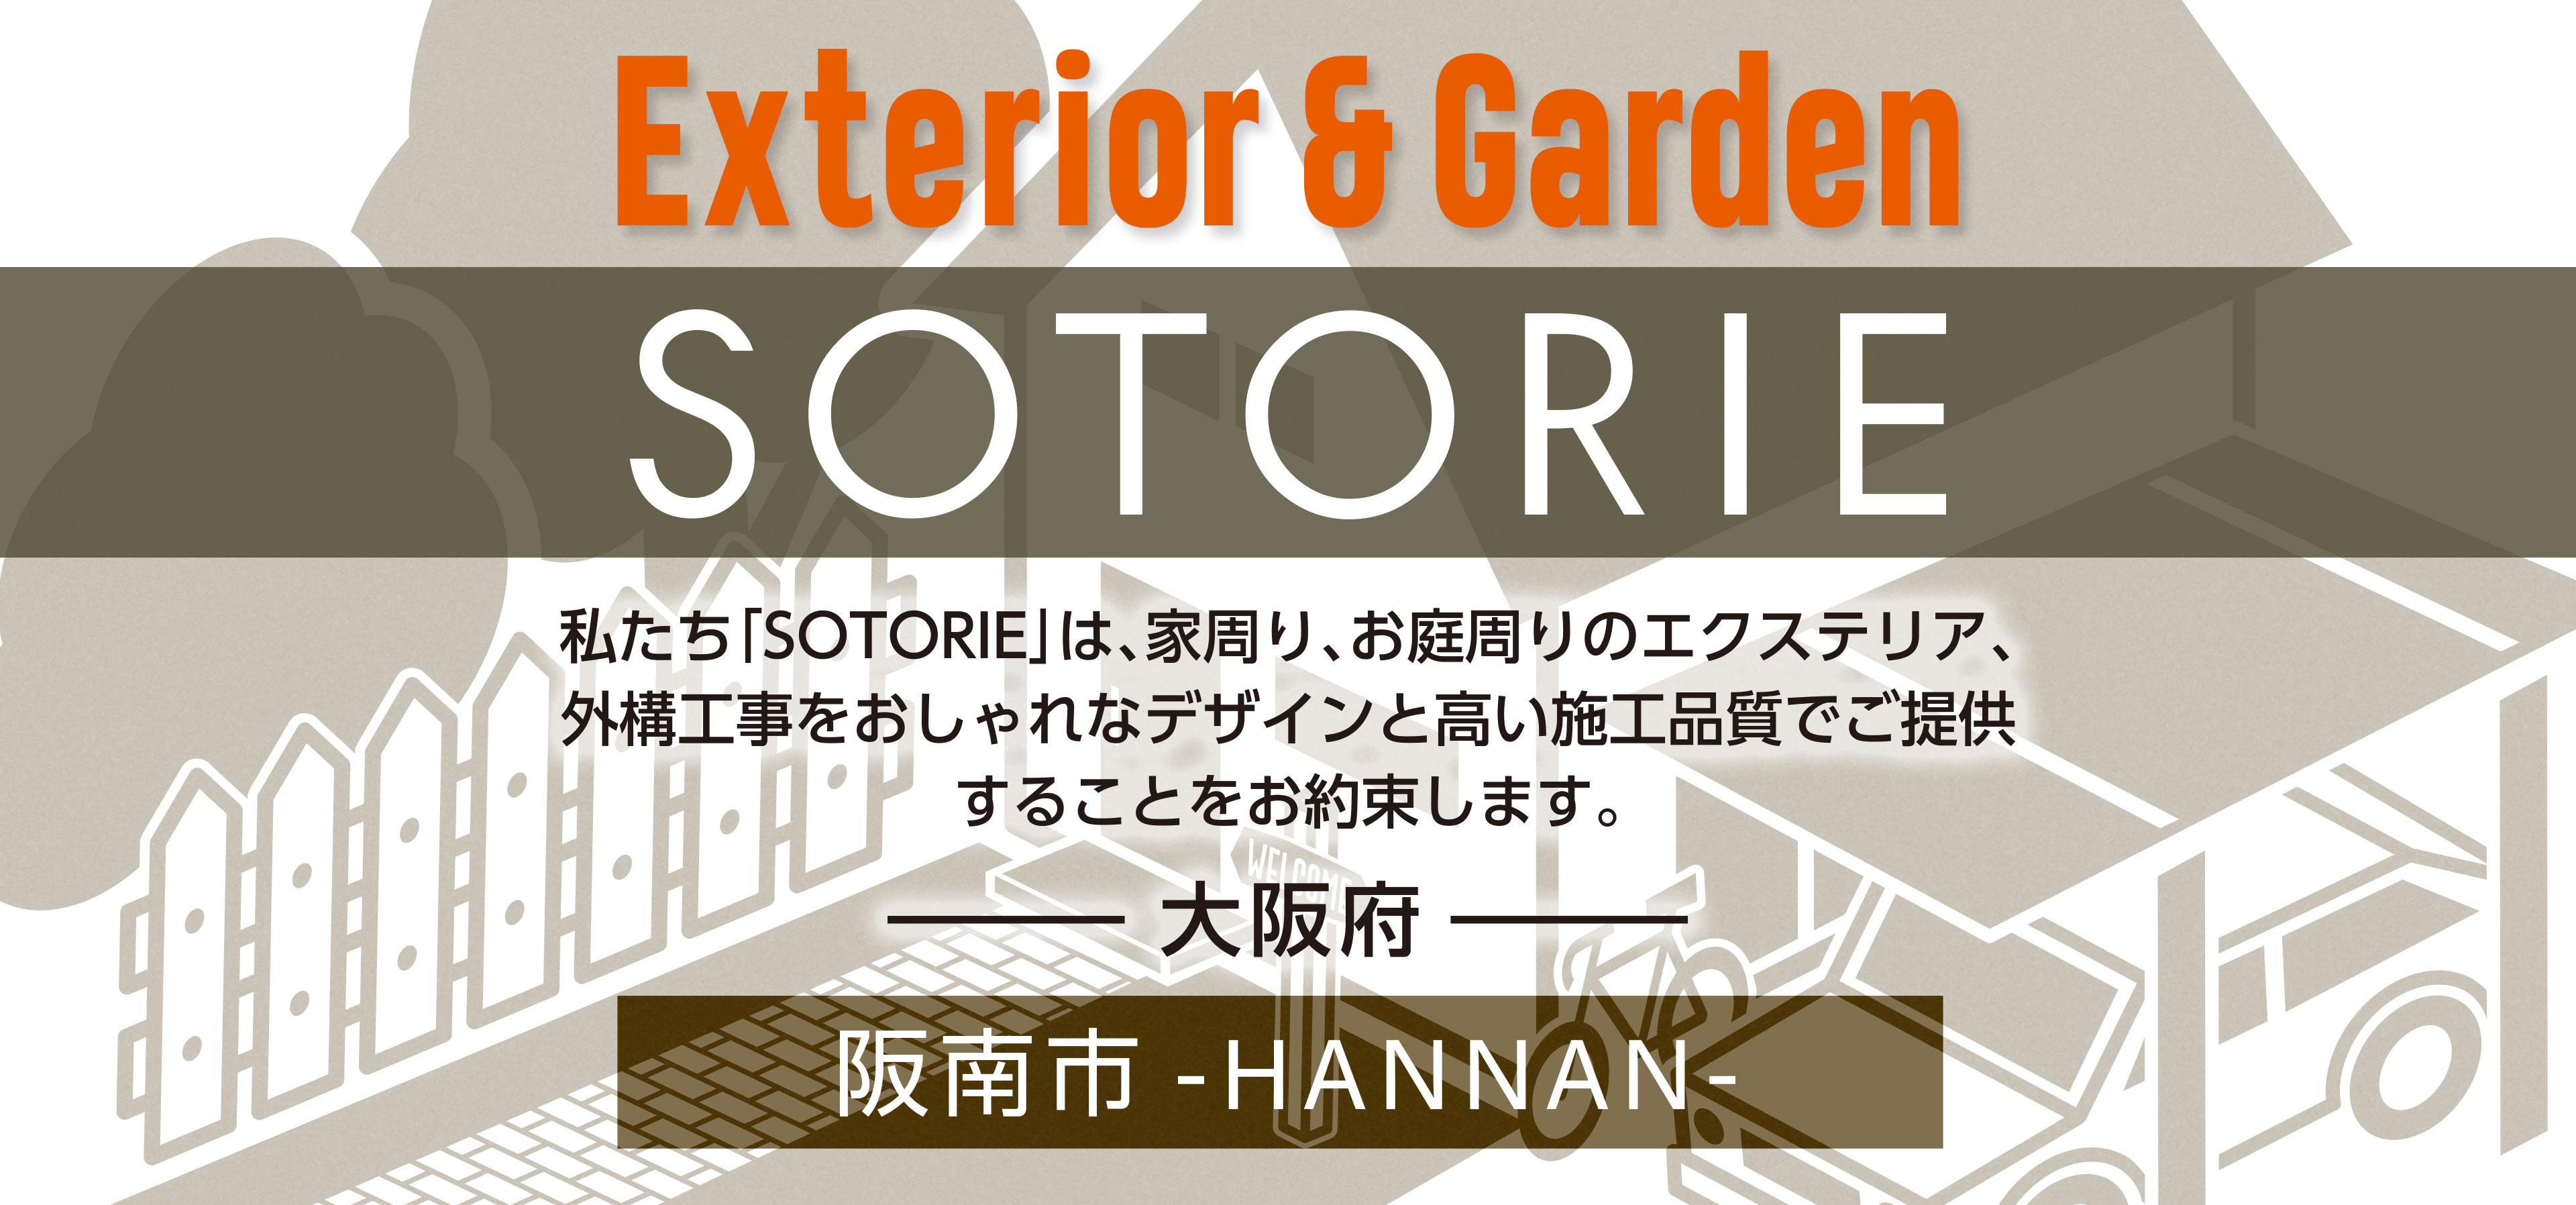 ソトリエ阪南市では、家周りと庭周りの外構、エクステリア工事をおしゃれなデザインと高い施工品質でご提供することをお約束します。